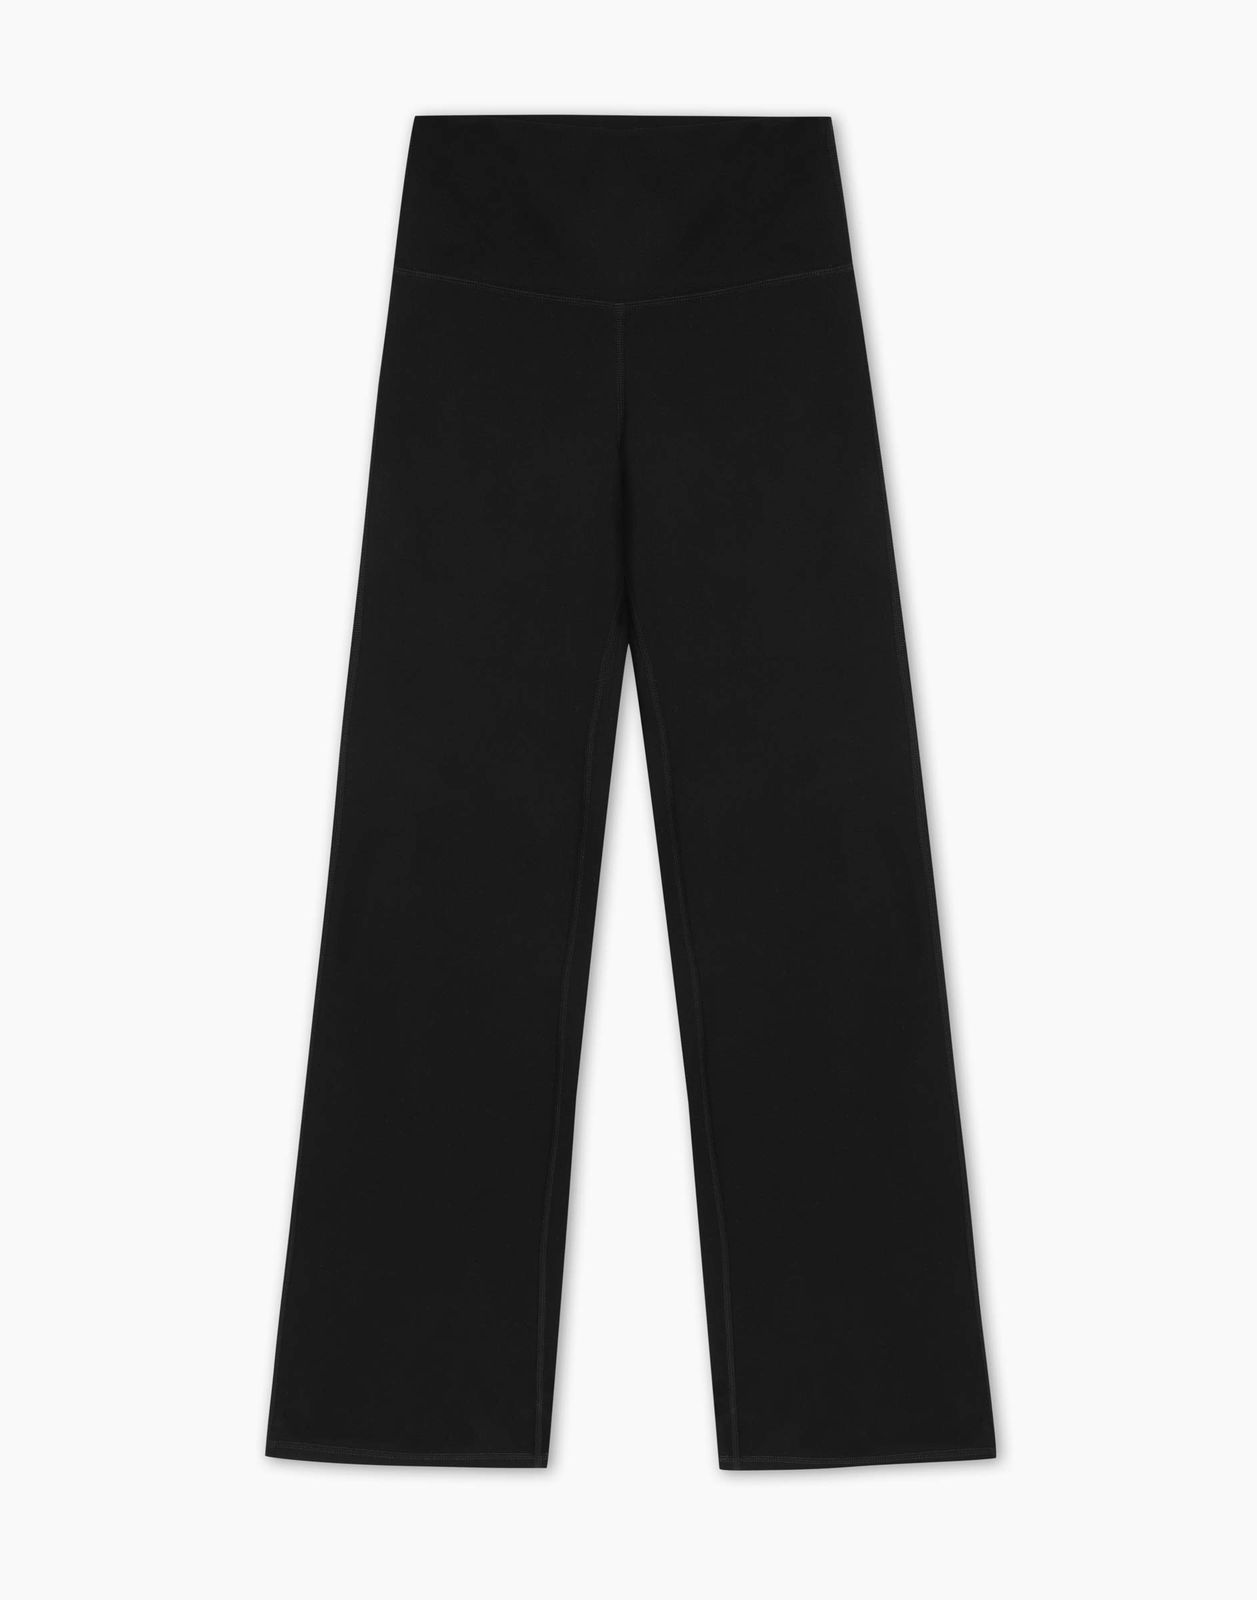 Спортивные легинсы женские Gloria Jeans GRT000345 черный XL/170